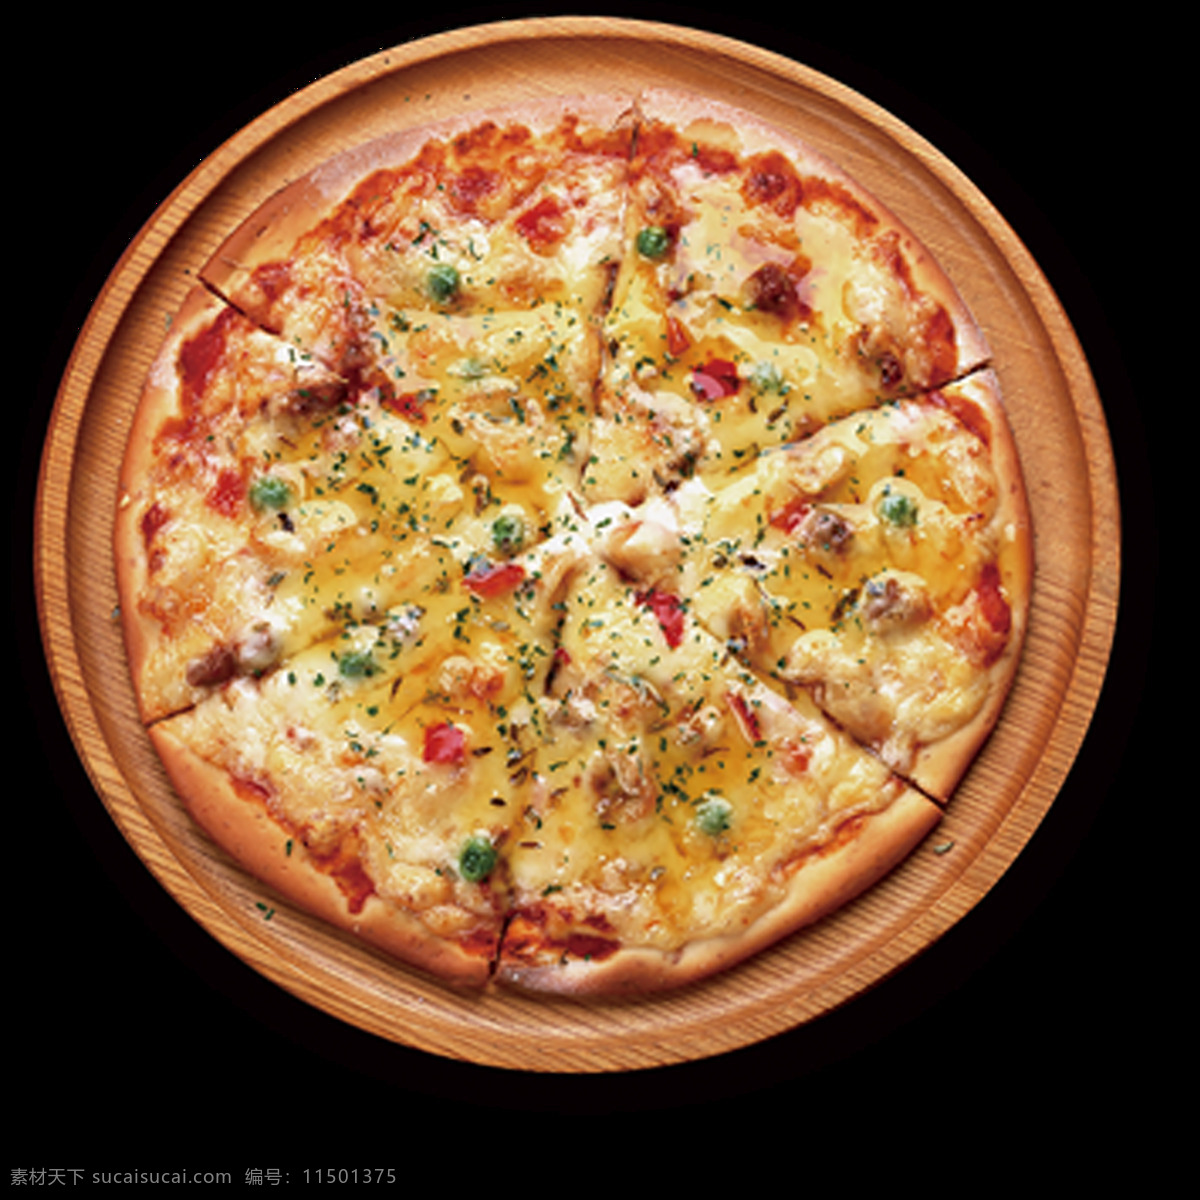 披萨图片 披萨 披萨海报 披萨展板 特色披萨 美味披萨 小吃 美食海报 美食小吃 披萨墙画 披萨菜单 牛肉披萨 夏威夷披萨 田园披萨 水果披萨 菠萝披萨 意式披萨 披萨字体 培根披萨 至尊披萨 披萨展架 西餐披萨 披萨广告 披萨宣传 现烤披萨 新鲜披萨 外卖披萨 披萨宣传单 披萨单页 披萨门店 美食 背景系列 展板模板